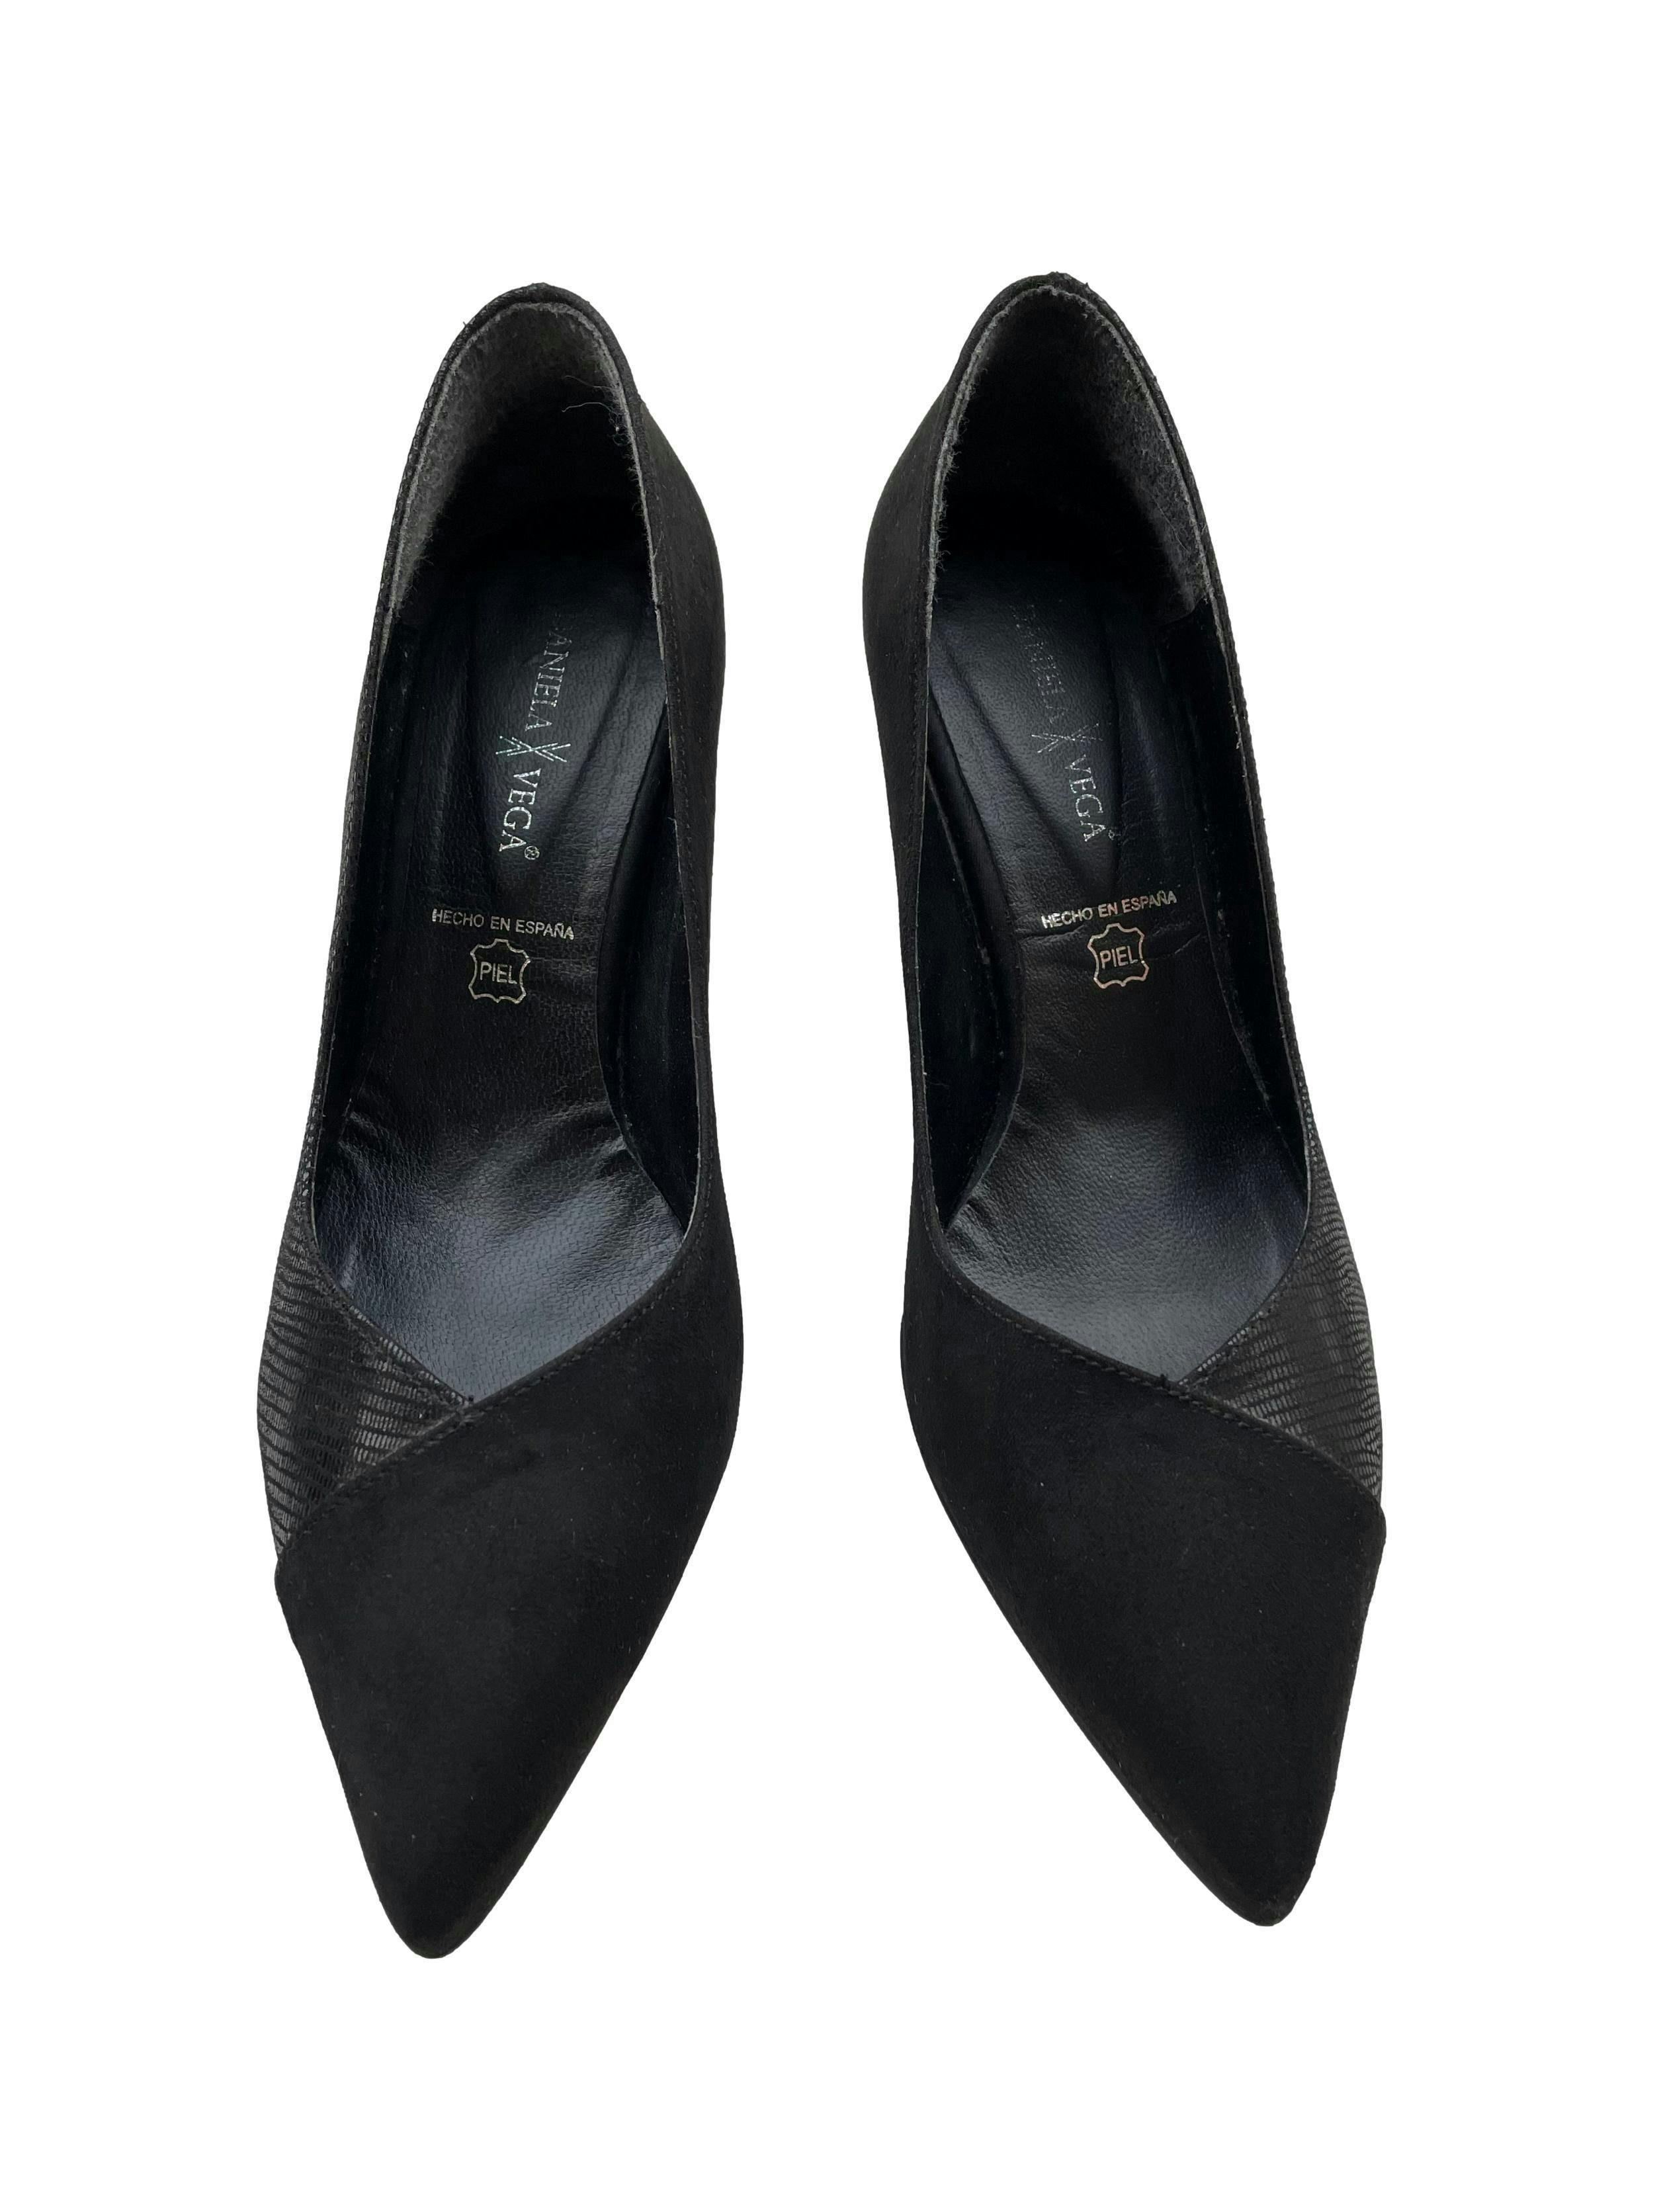 Zapatos Daniela Vega de textil negro con textura y tipo gamuza, modelo en punta, taco 7cm. Estado 9/10